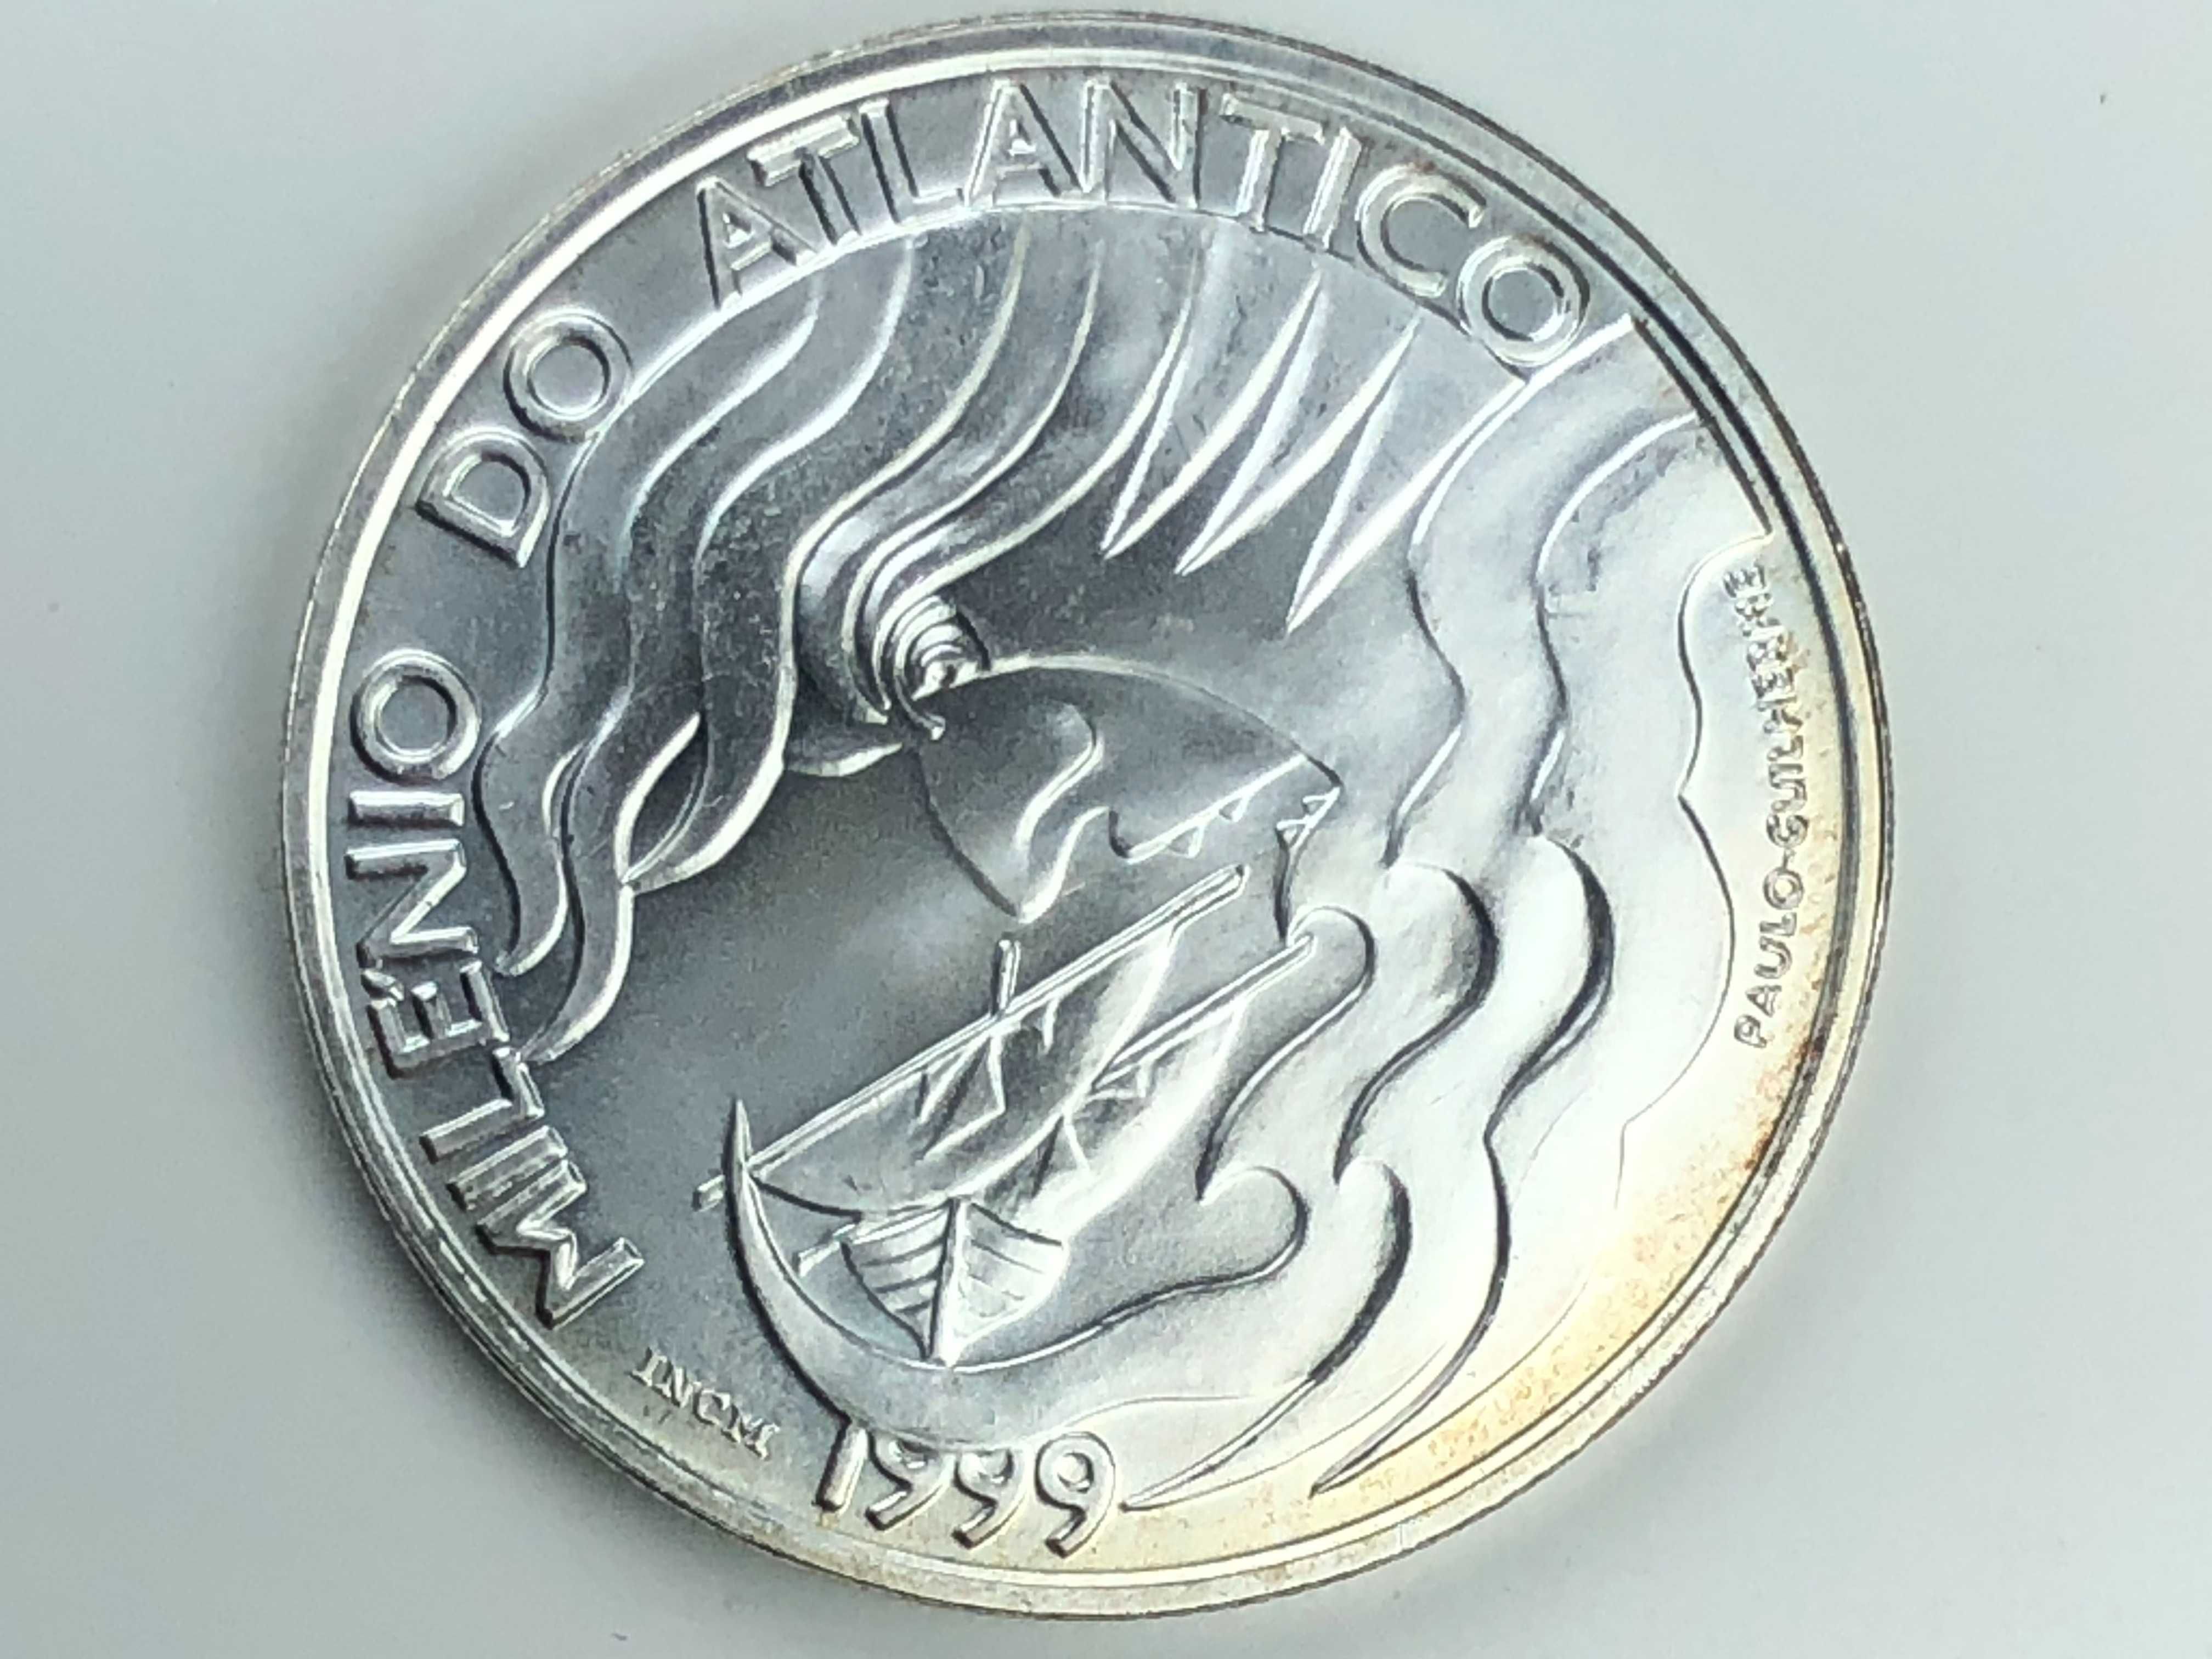 1.000 Escudos 1999 Prata - Milénio do Atlântico